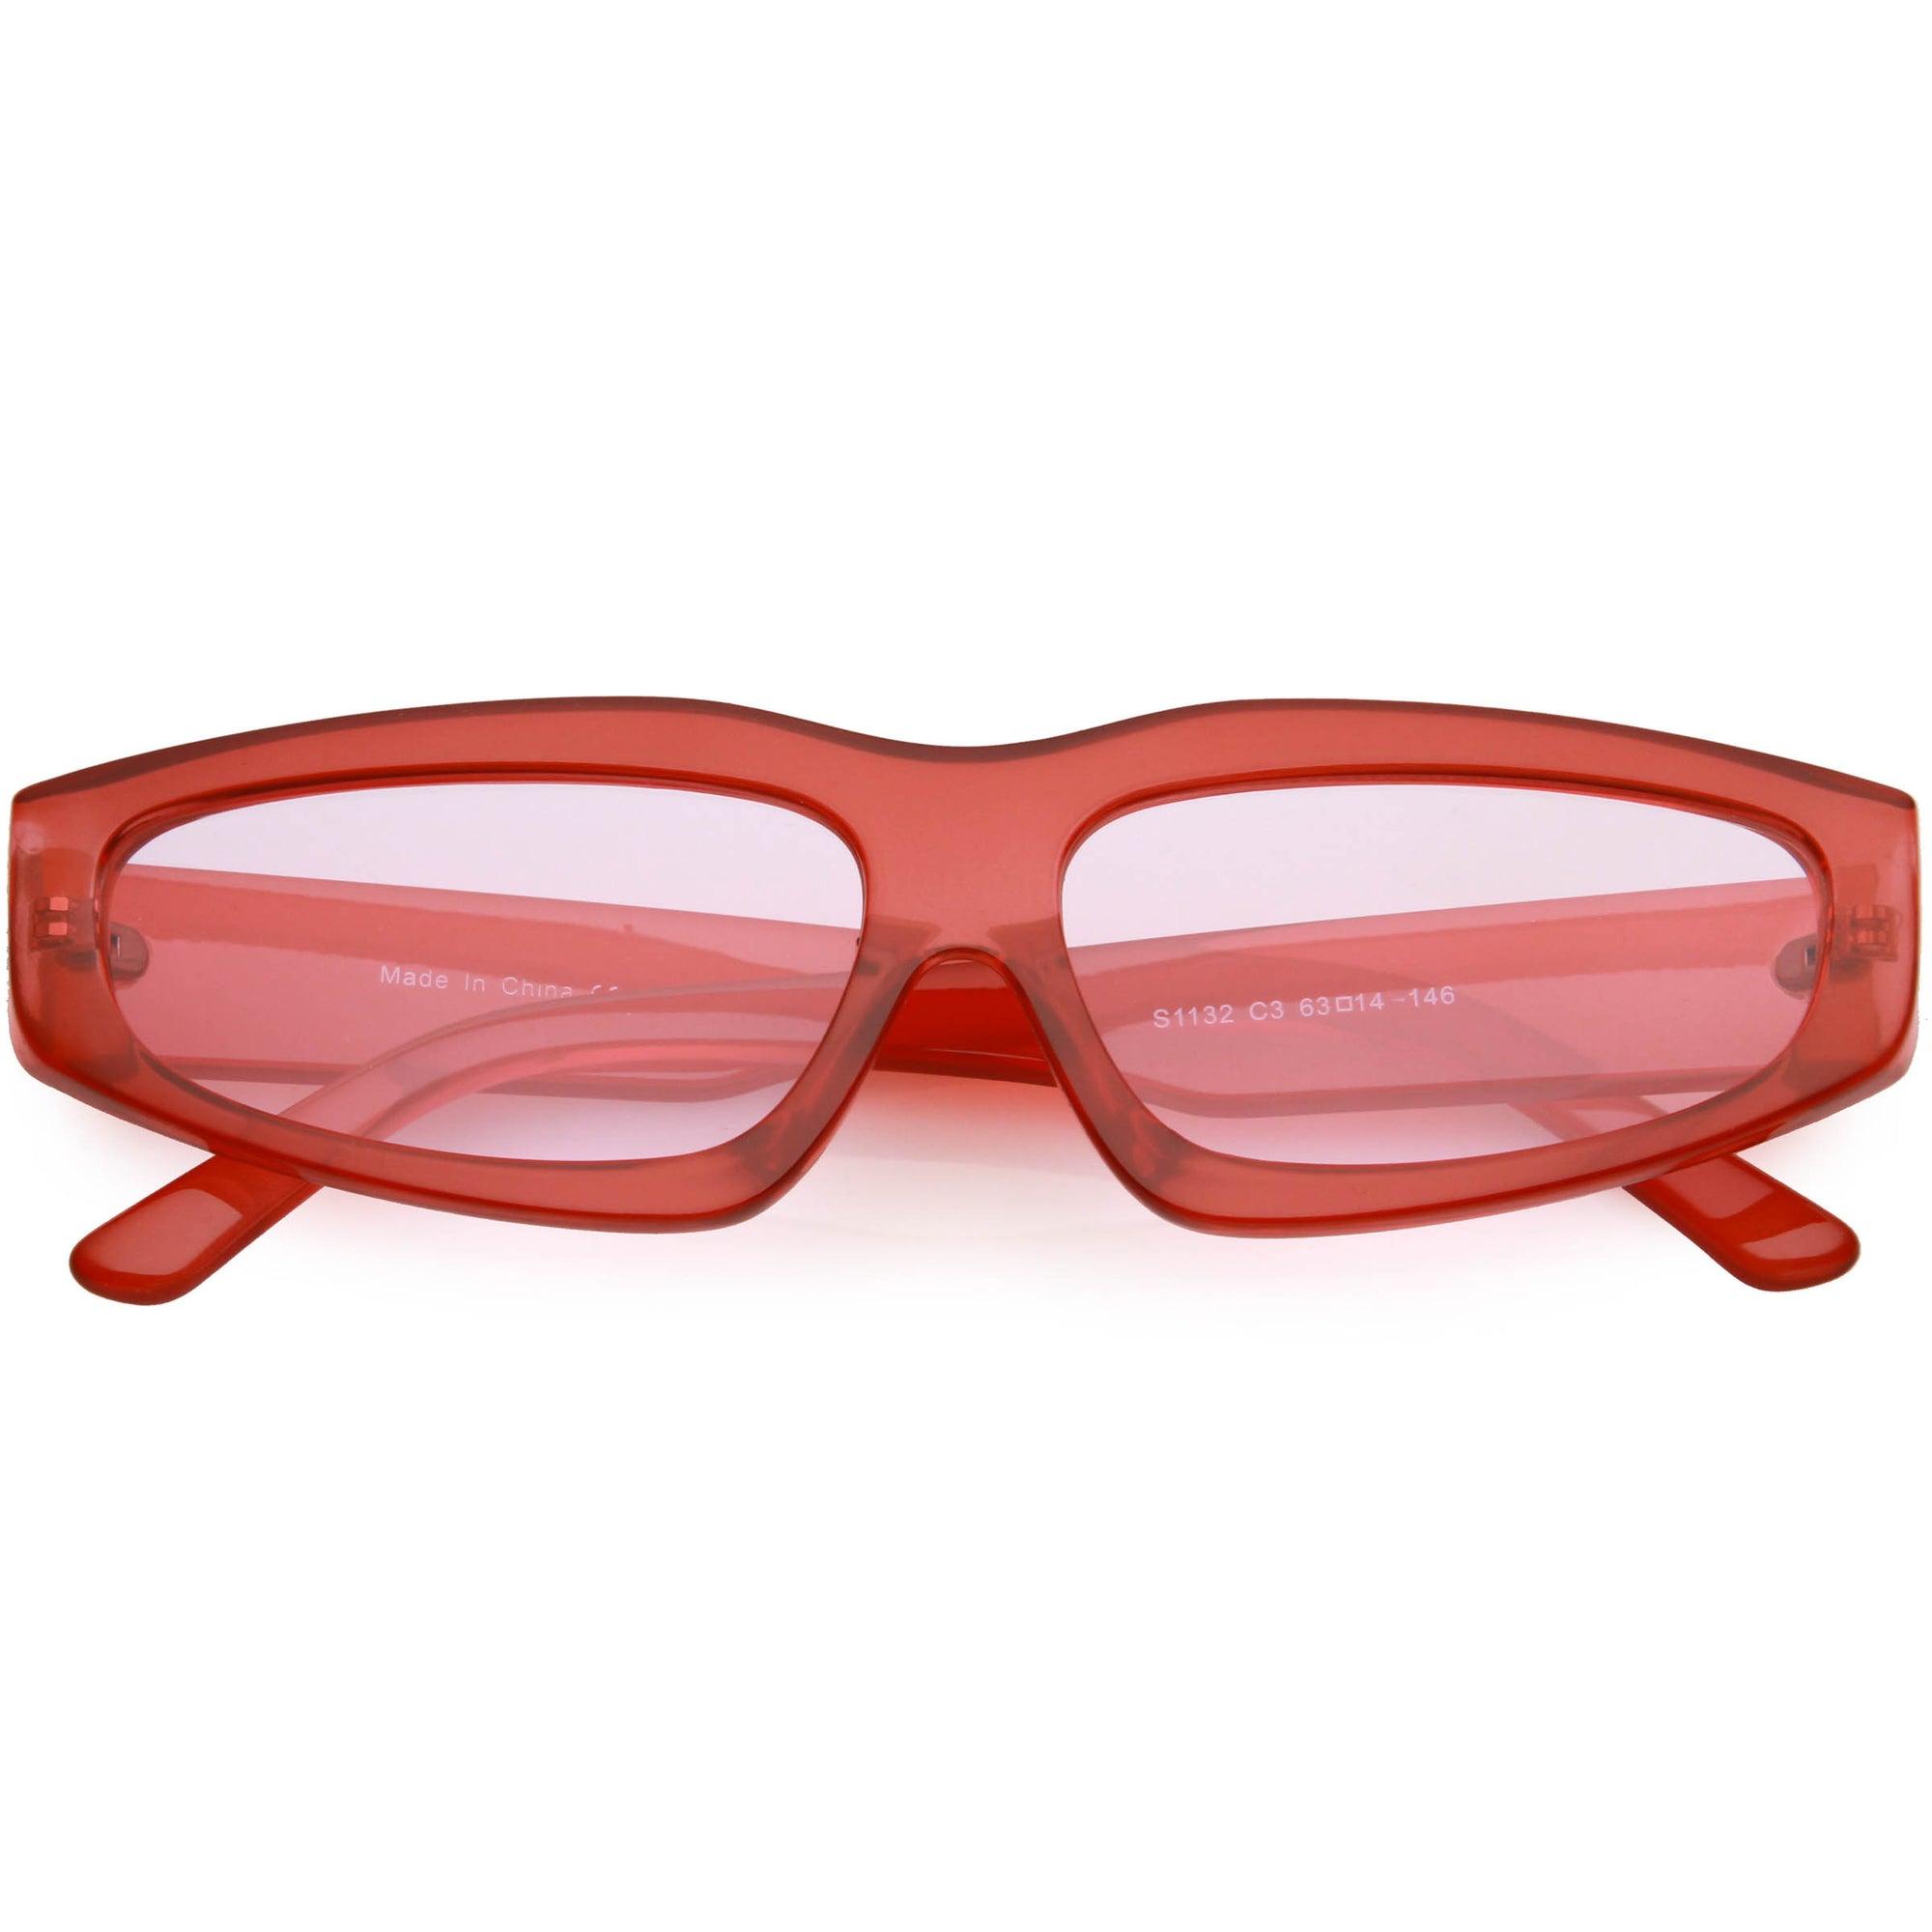 Retro Thick Frame Sunglasses Red